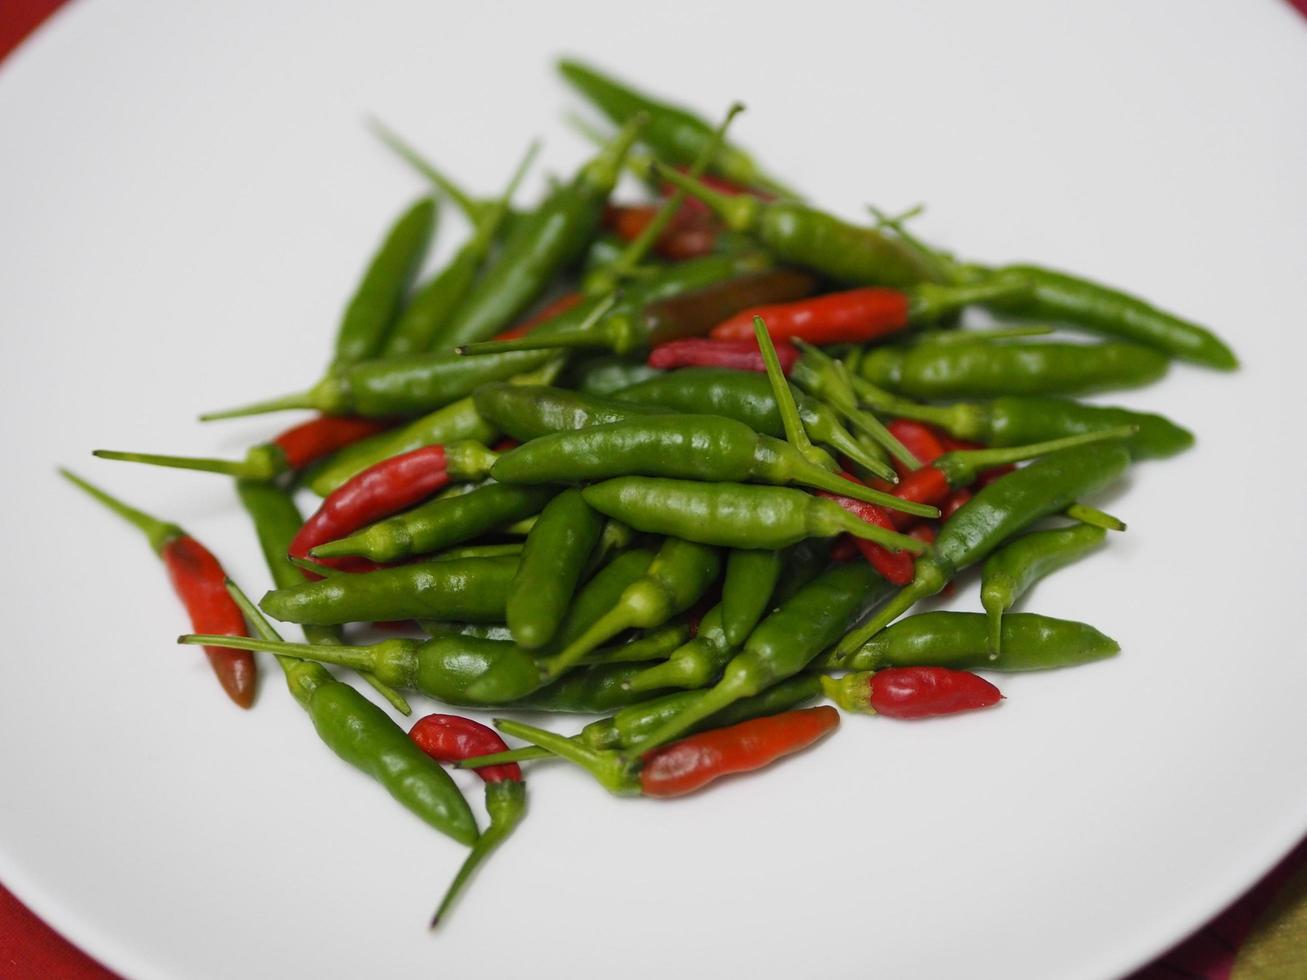 grüne rote thailändische pfeffer, chili padi, capsicum annuum frische auf weißem plattengemüselebensmittel foto